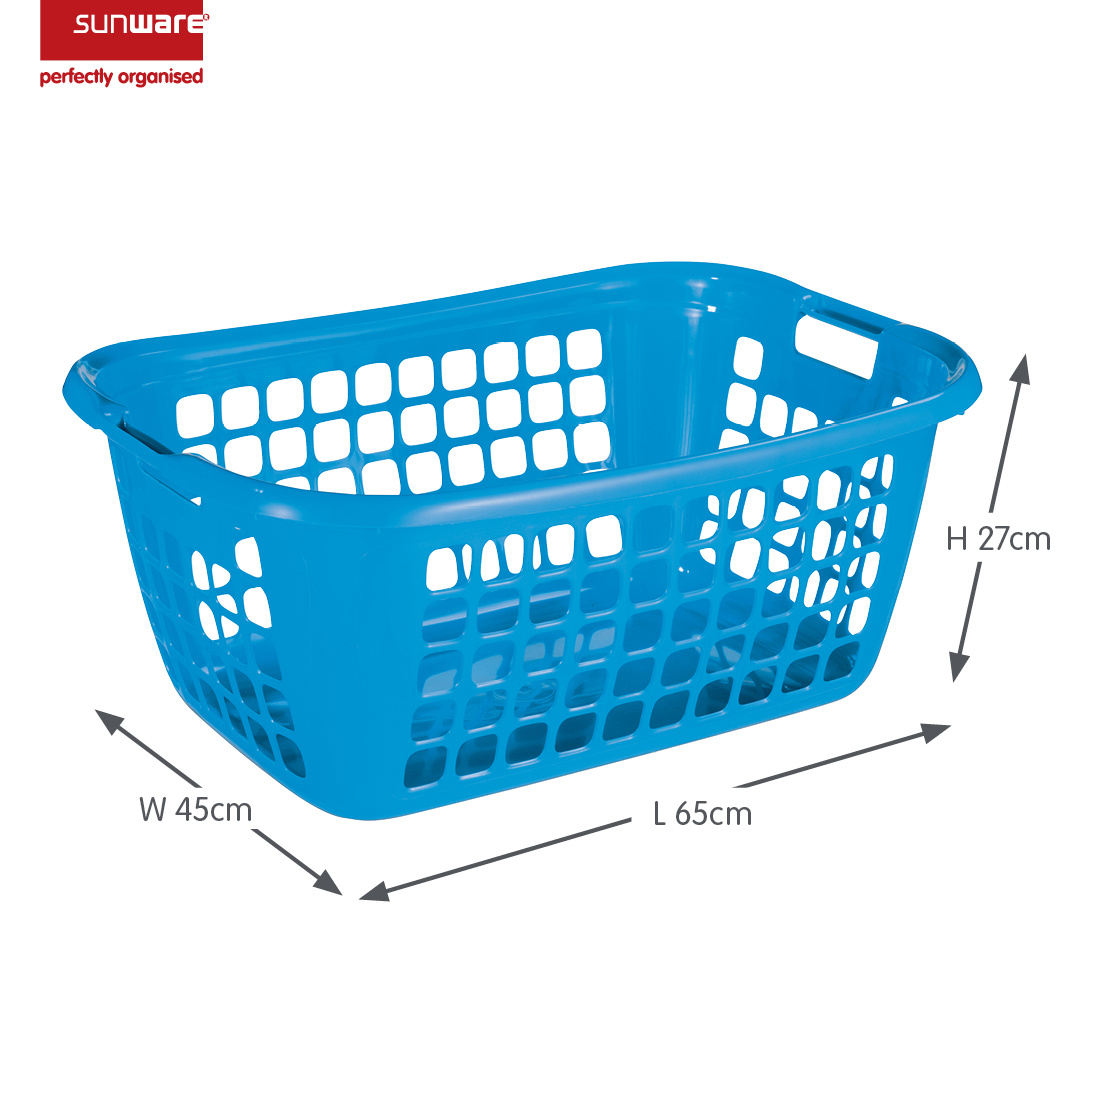 Basic laundry basket 65 cm blue